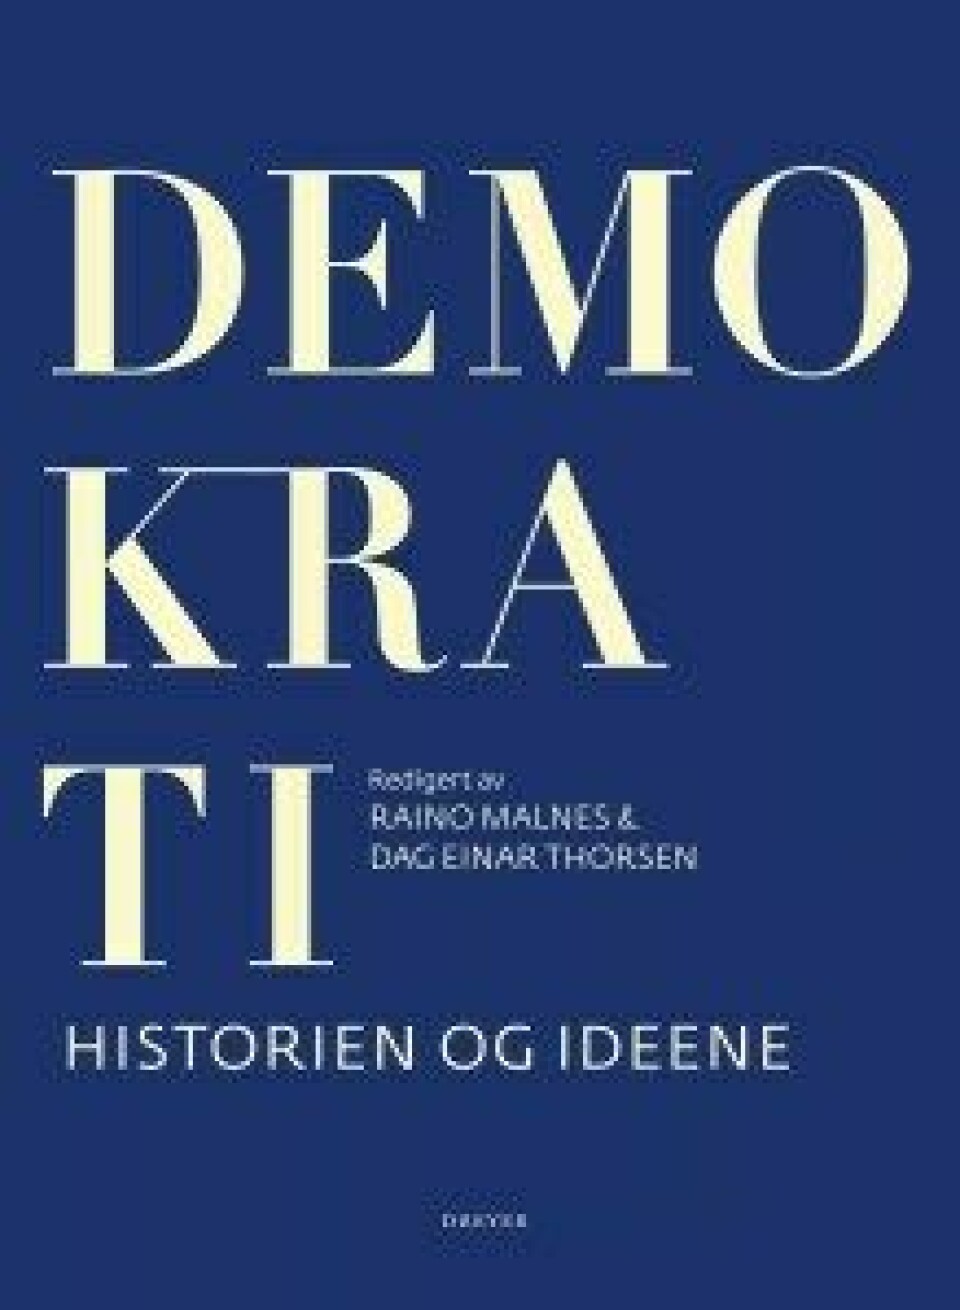 Demokrati – historien og ideene, Raino Malnes og Dag Einar Thorsen (red.), Dreyer forlag. Oslo 2015